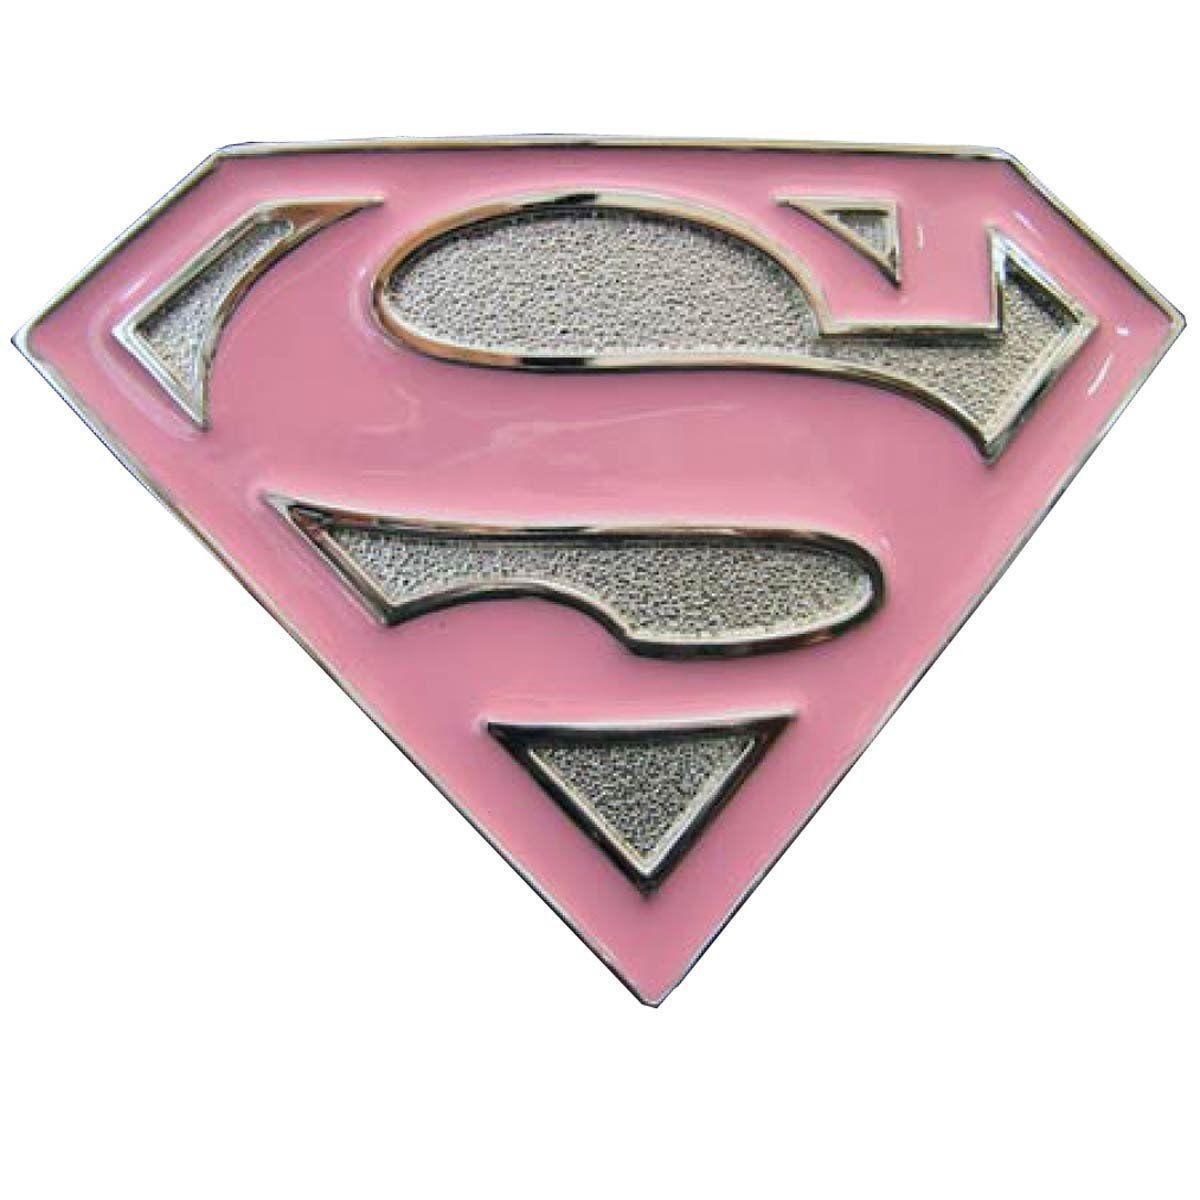 Girly Superhero Logo - Buckle with Supergirl Logo, Girly Buckle, Top Belt Buckle: Amazon.co